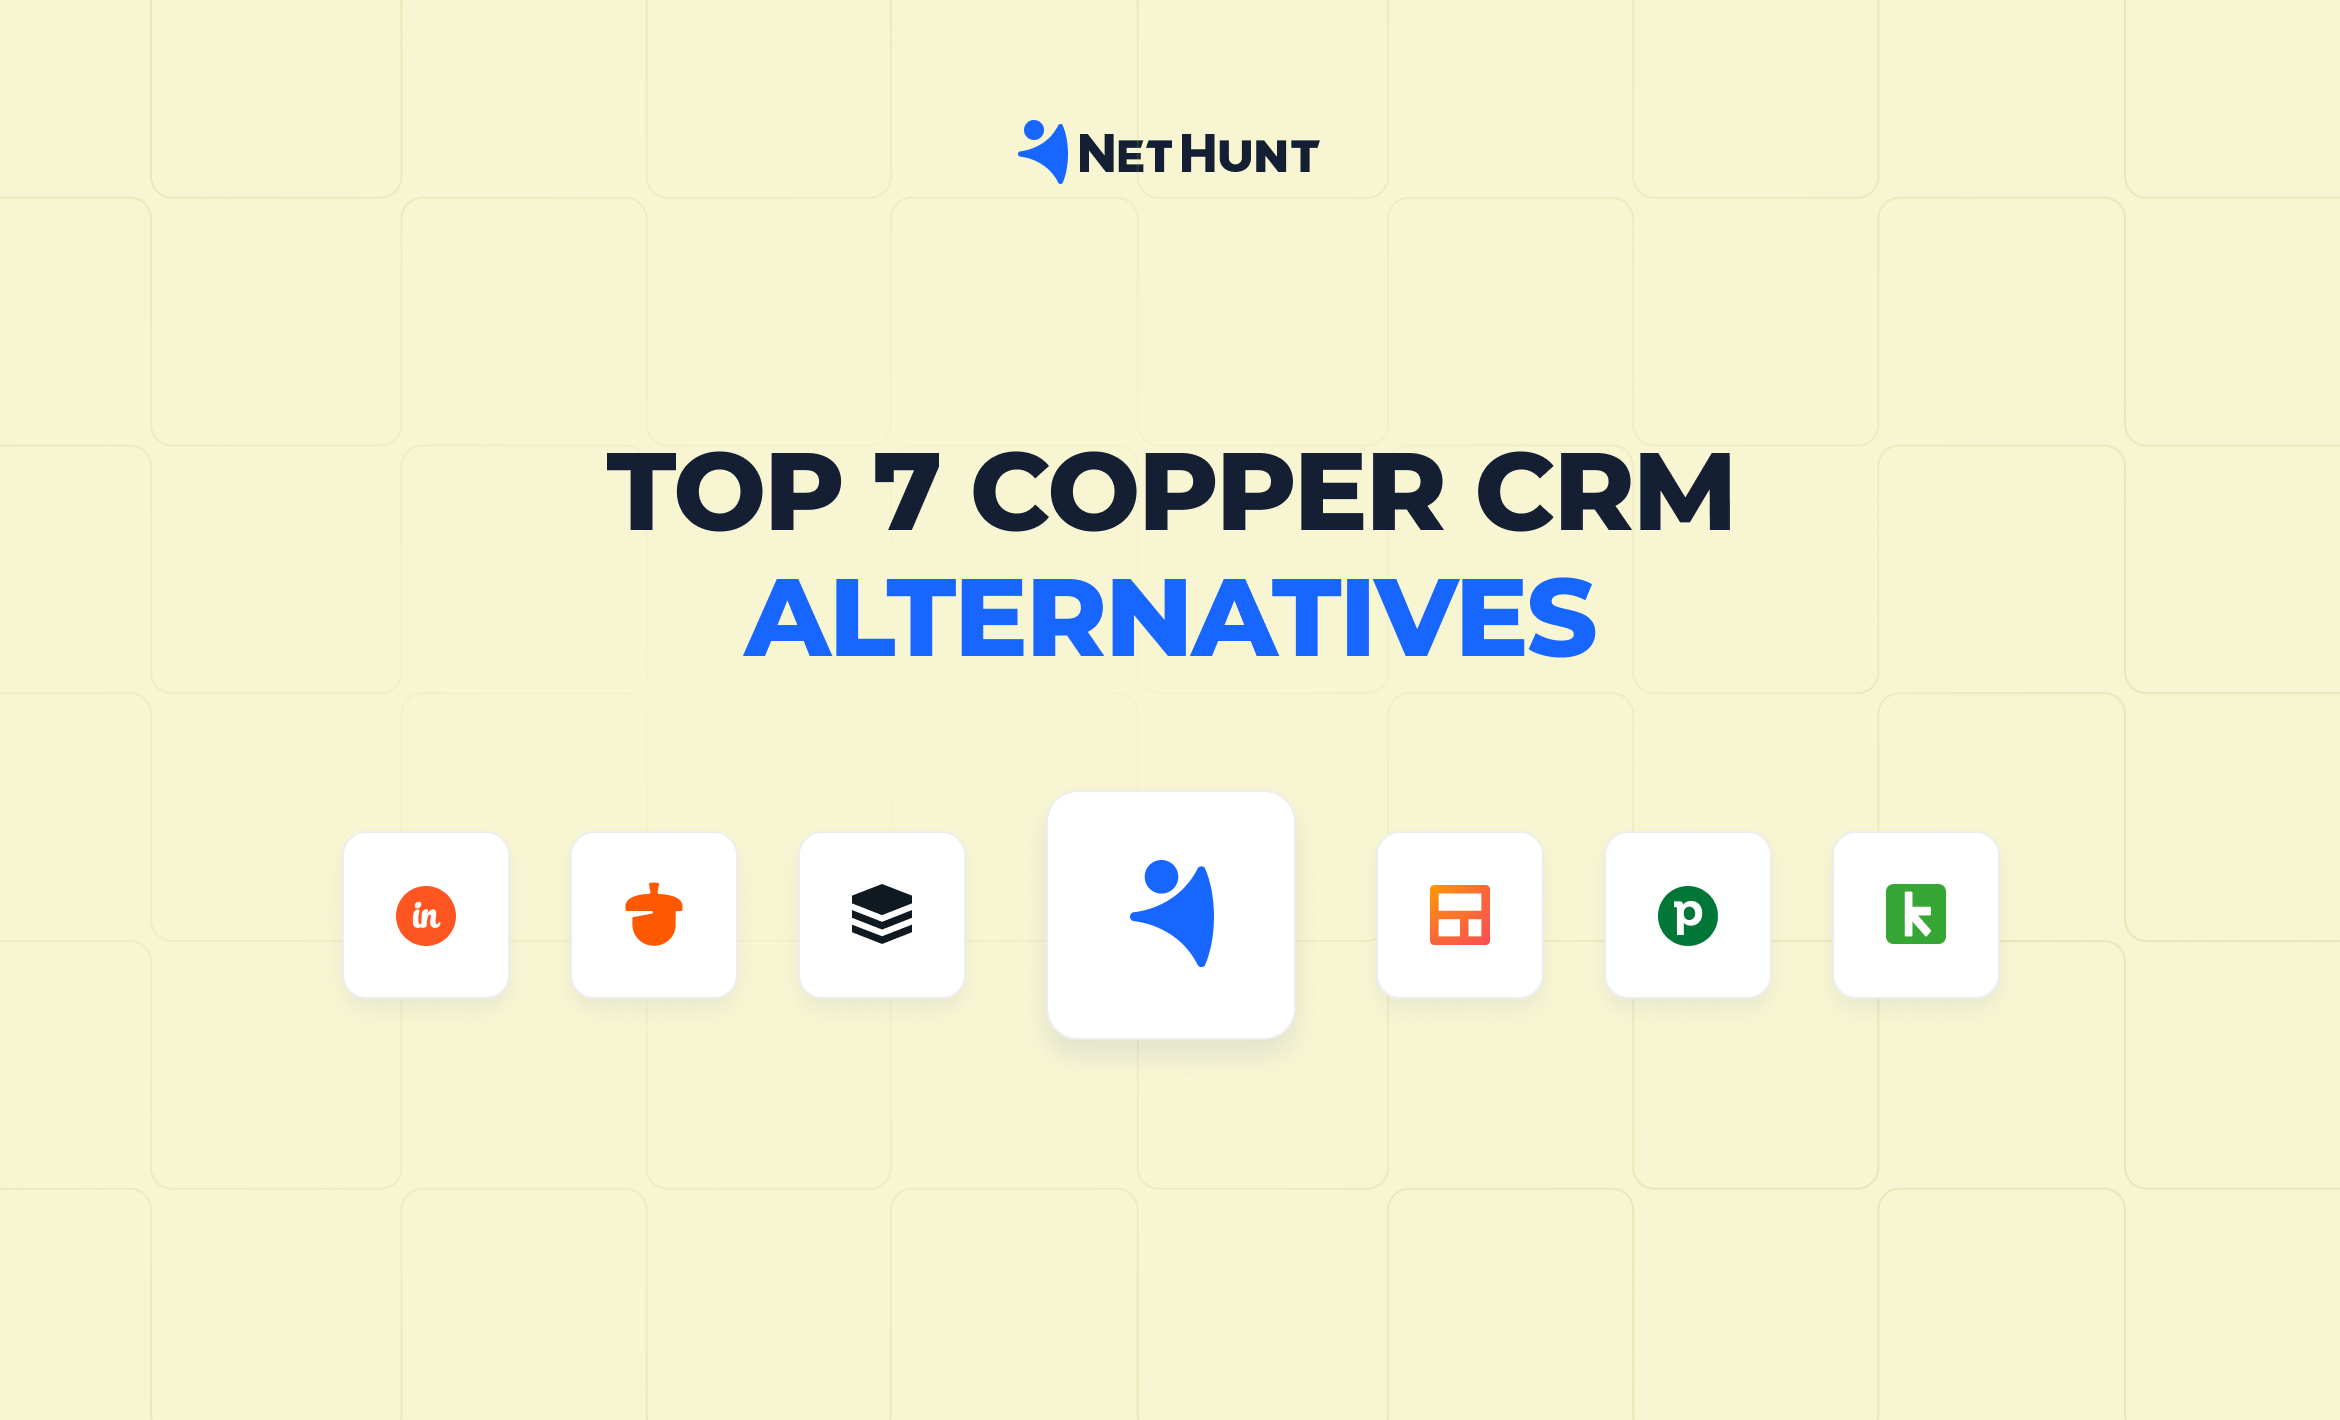 Top 7 Copper CRM Alternatives